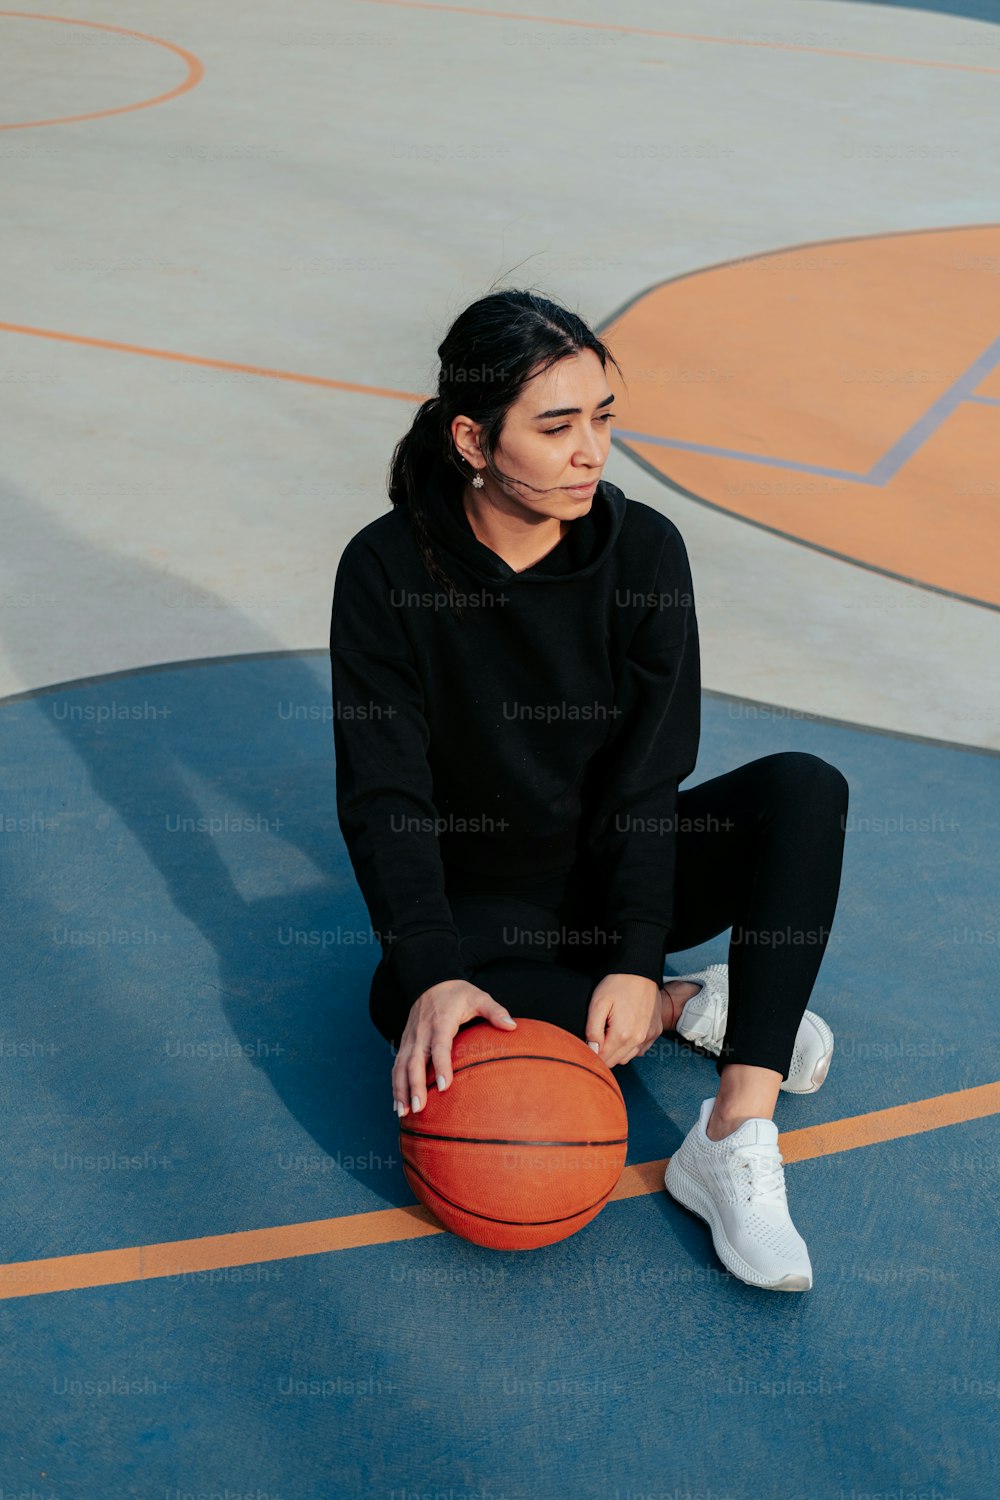 バスケットボールコートに座ってバスケットボールを持っている女性